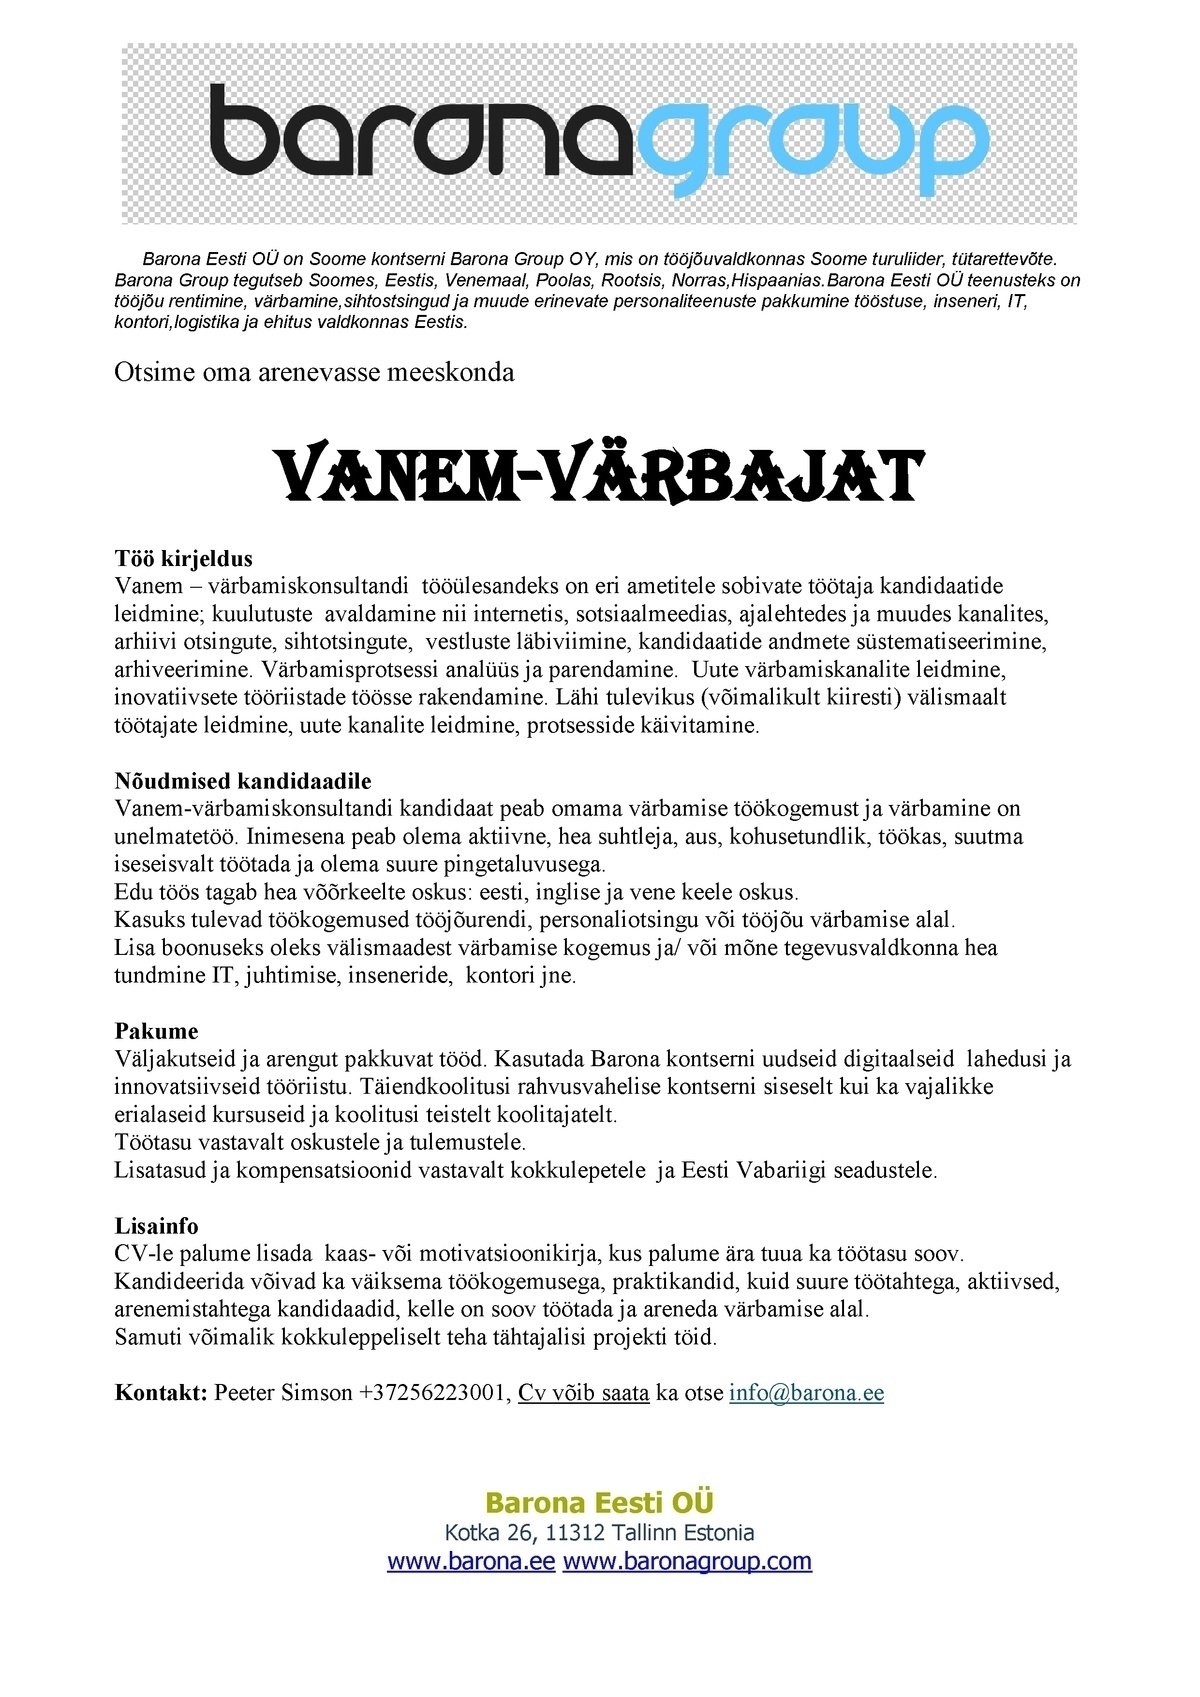 Barona Eesti OÜ Vanem-värbamiskonsultant